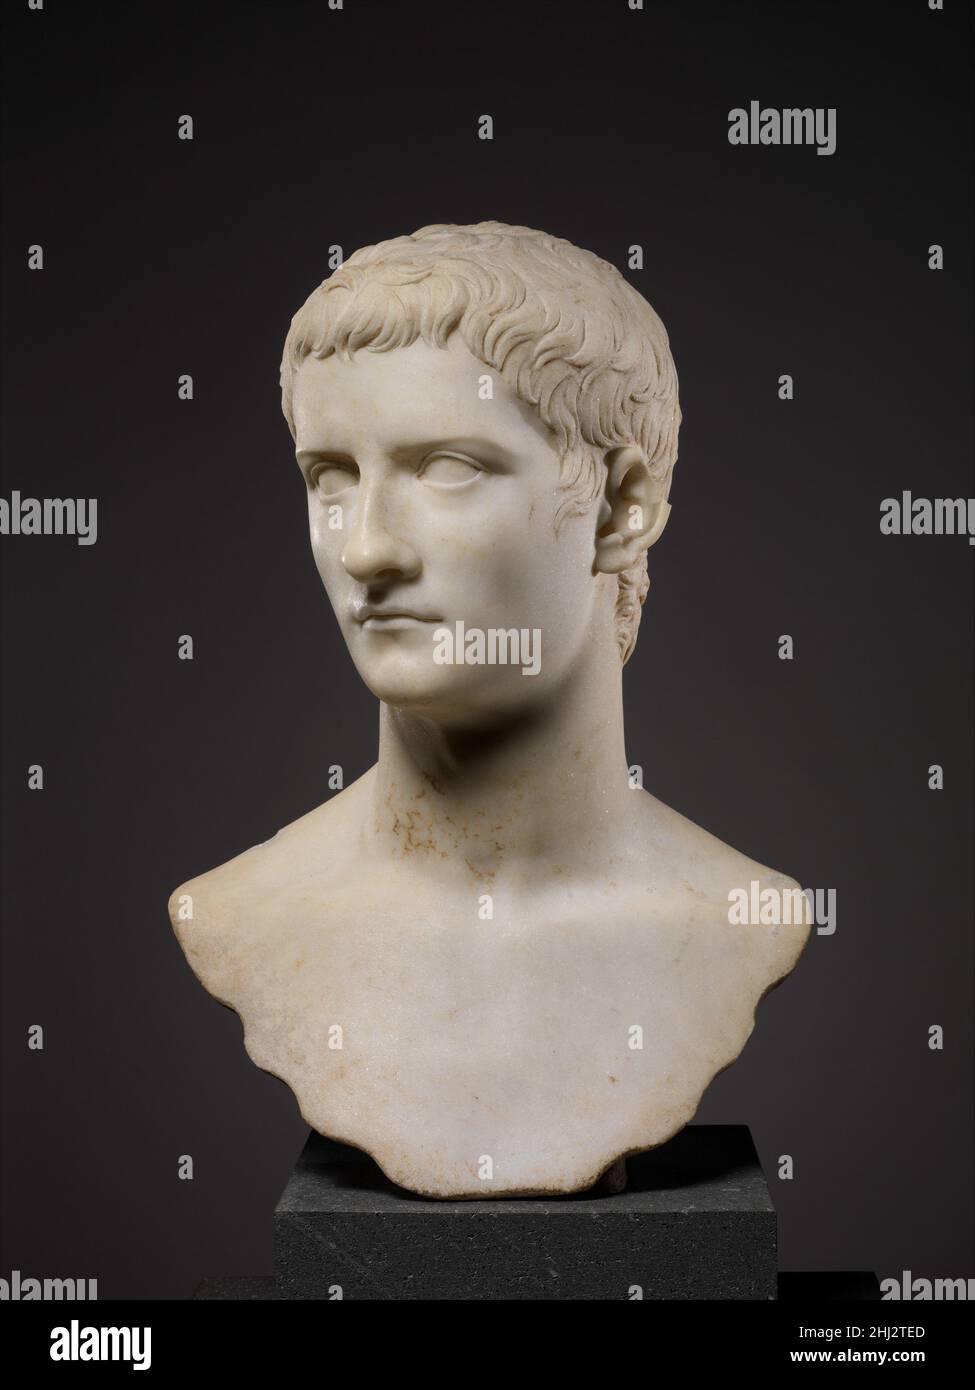 Marmorportrait Büste des Kaiser Gaius, bekannt als Caligula A.D. 37–41 Roman der für Augustus geschaffene Porträtstil wurde von seiner Familie und unmittelbaren Nachfolgern übernommen, um die Einheit und Kontinuität der Julio-Claudianischen Dynastie zu betonen. Diese schöne Büste von Caligula (r. 37 – 41 n. Chr.) weist regelmäßige Merkmale und sorgfältig gestaltete Haarsträhnen auf, die denen in den Porträts des Augustus ähneln. Hier hat der Künstler aber auch etwas von Caligulas Eitelkeit und Grausamkeit in der stolzen Wendung des Kopfes und den dünnen, gespülten Lippen vermittelt. Hören Sie Experten beleuchten die Geschichte dieses Kunstwerks Hören Sie Play oder pa Stockfoto